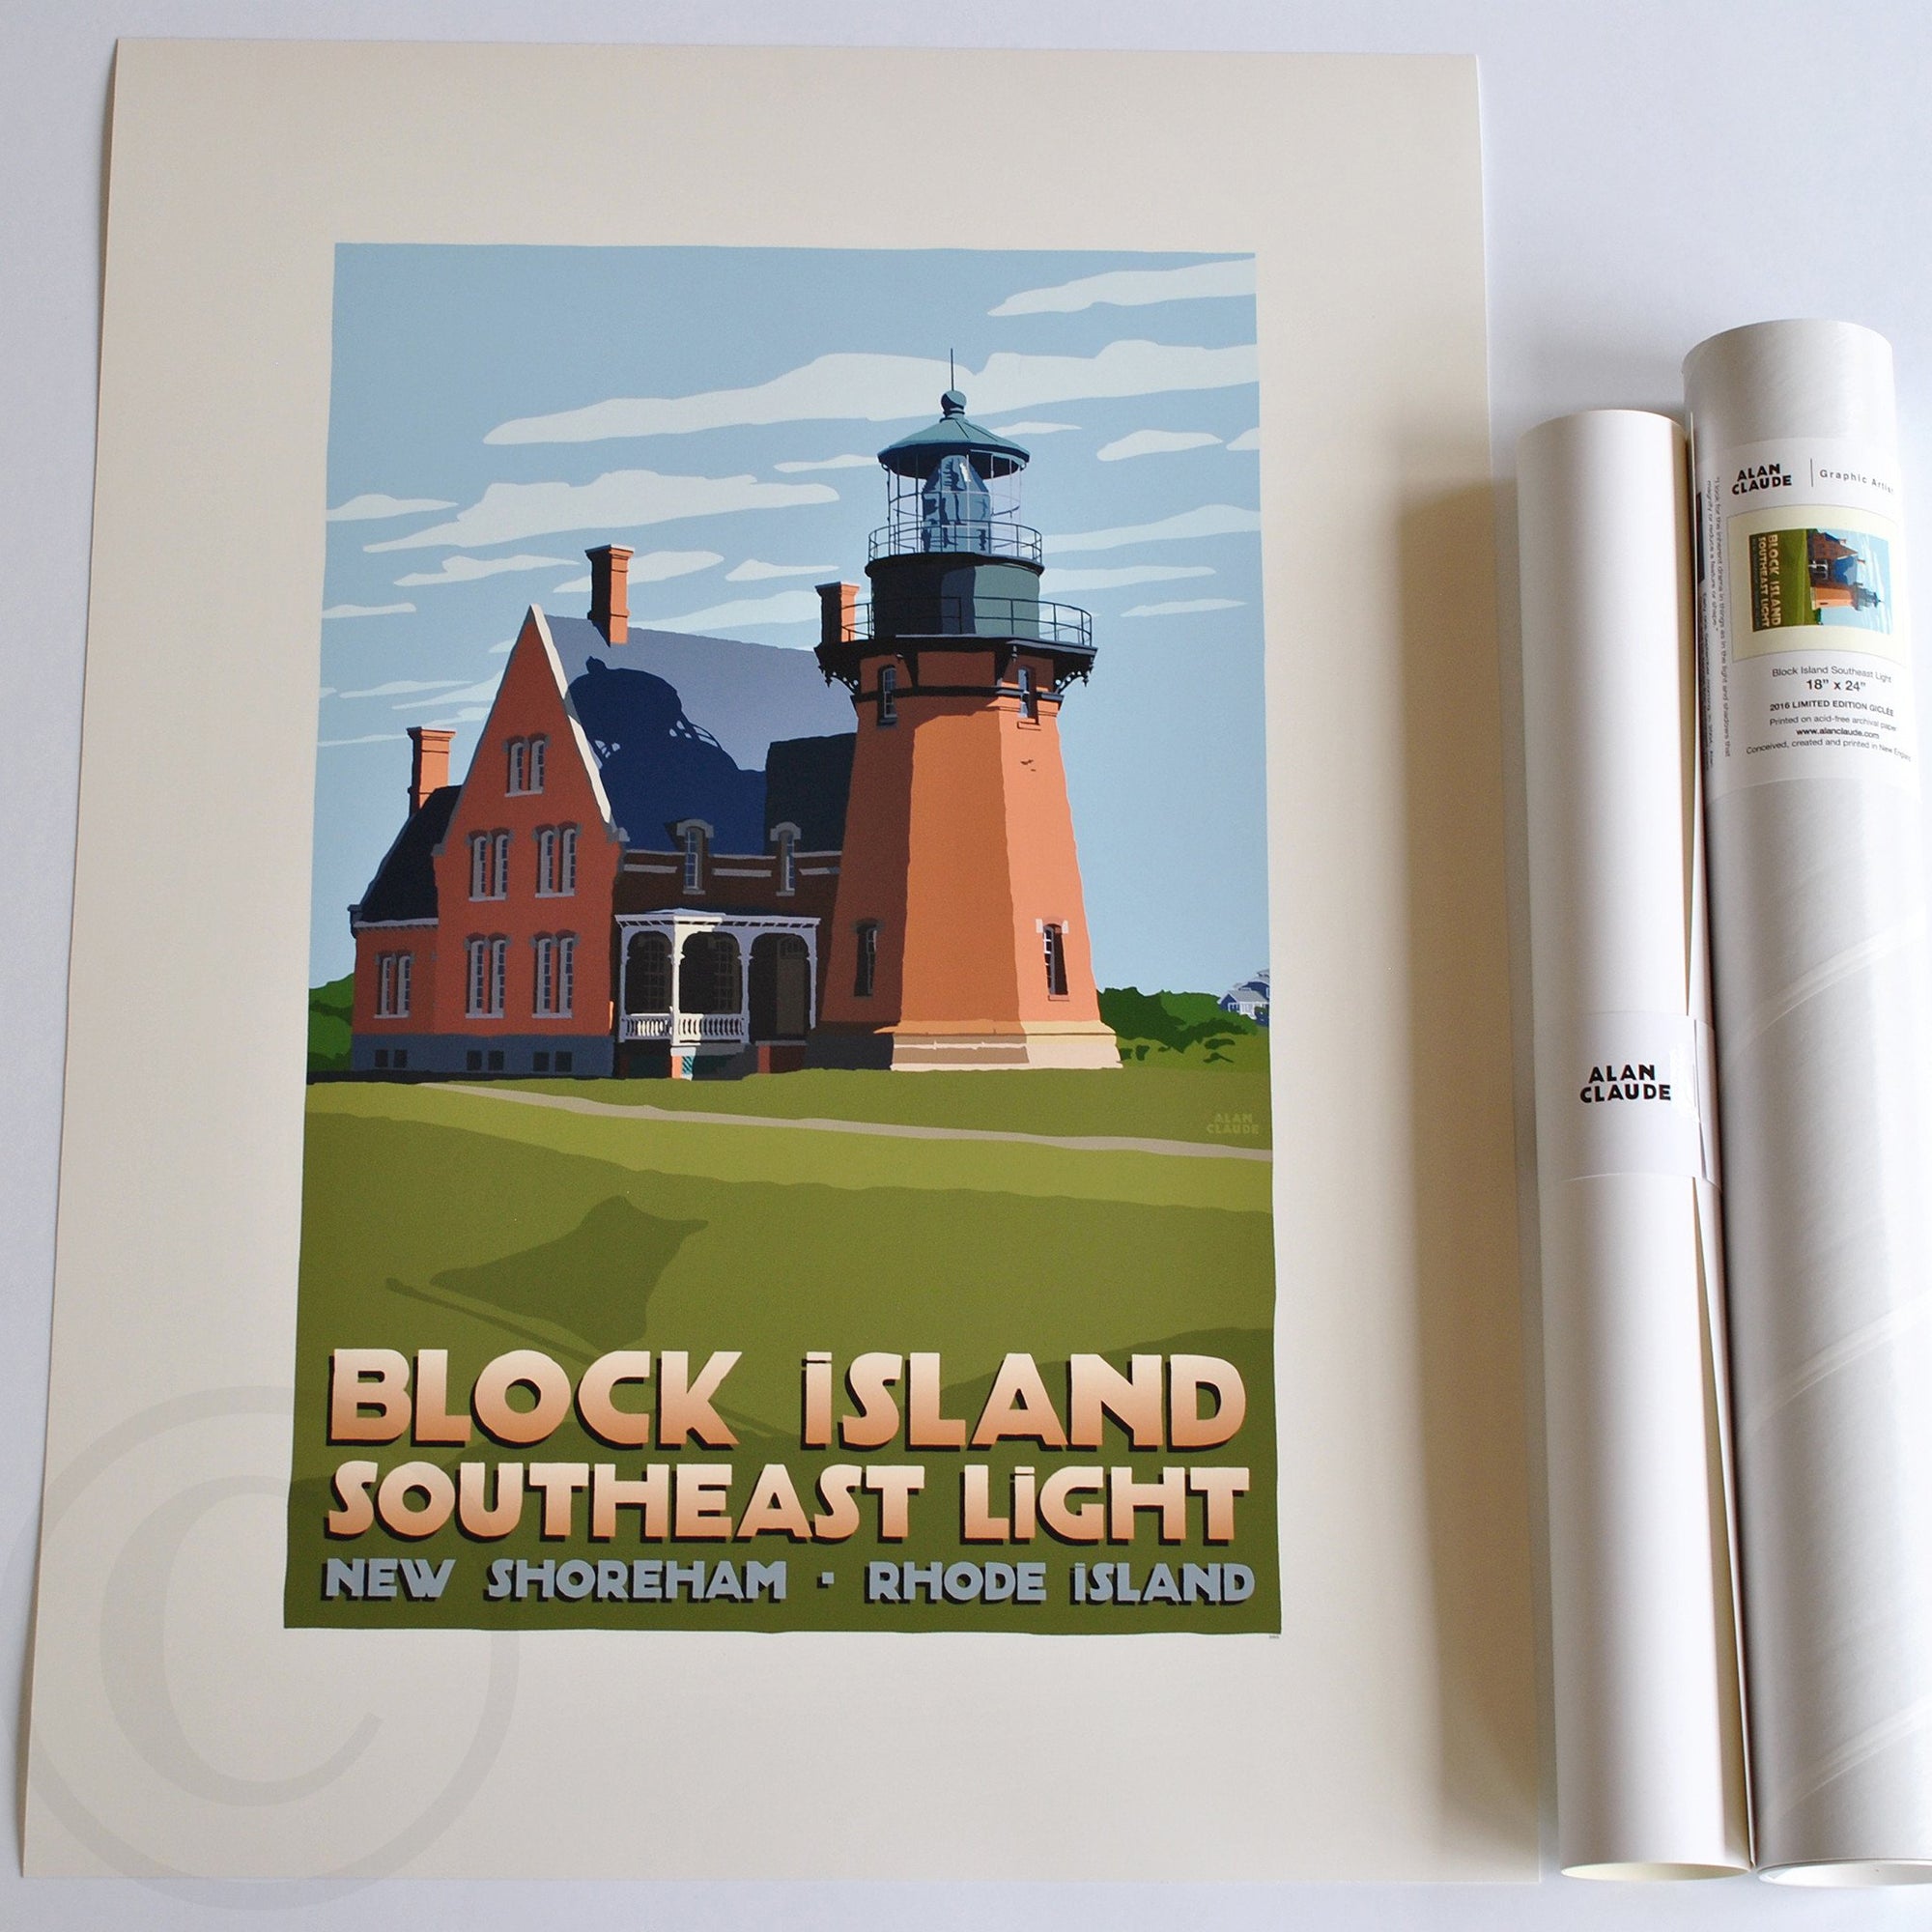 Block Island Southeast Light Art Print 18" x 24" Travel Poster By Alan Claude - Rhode Island